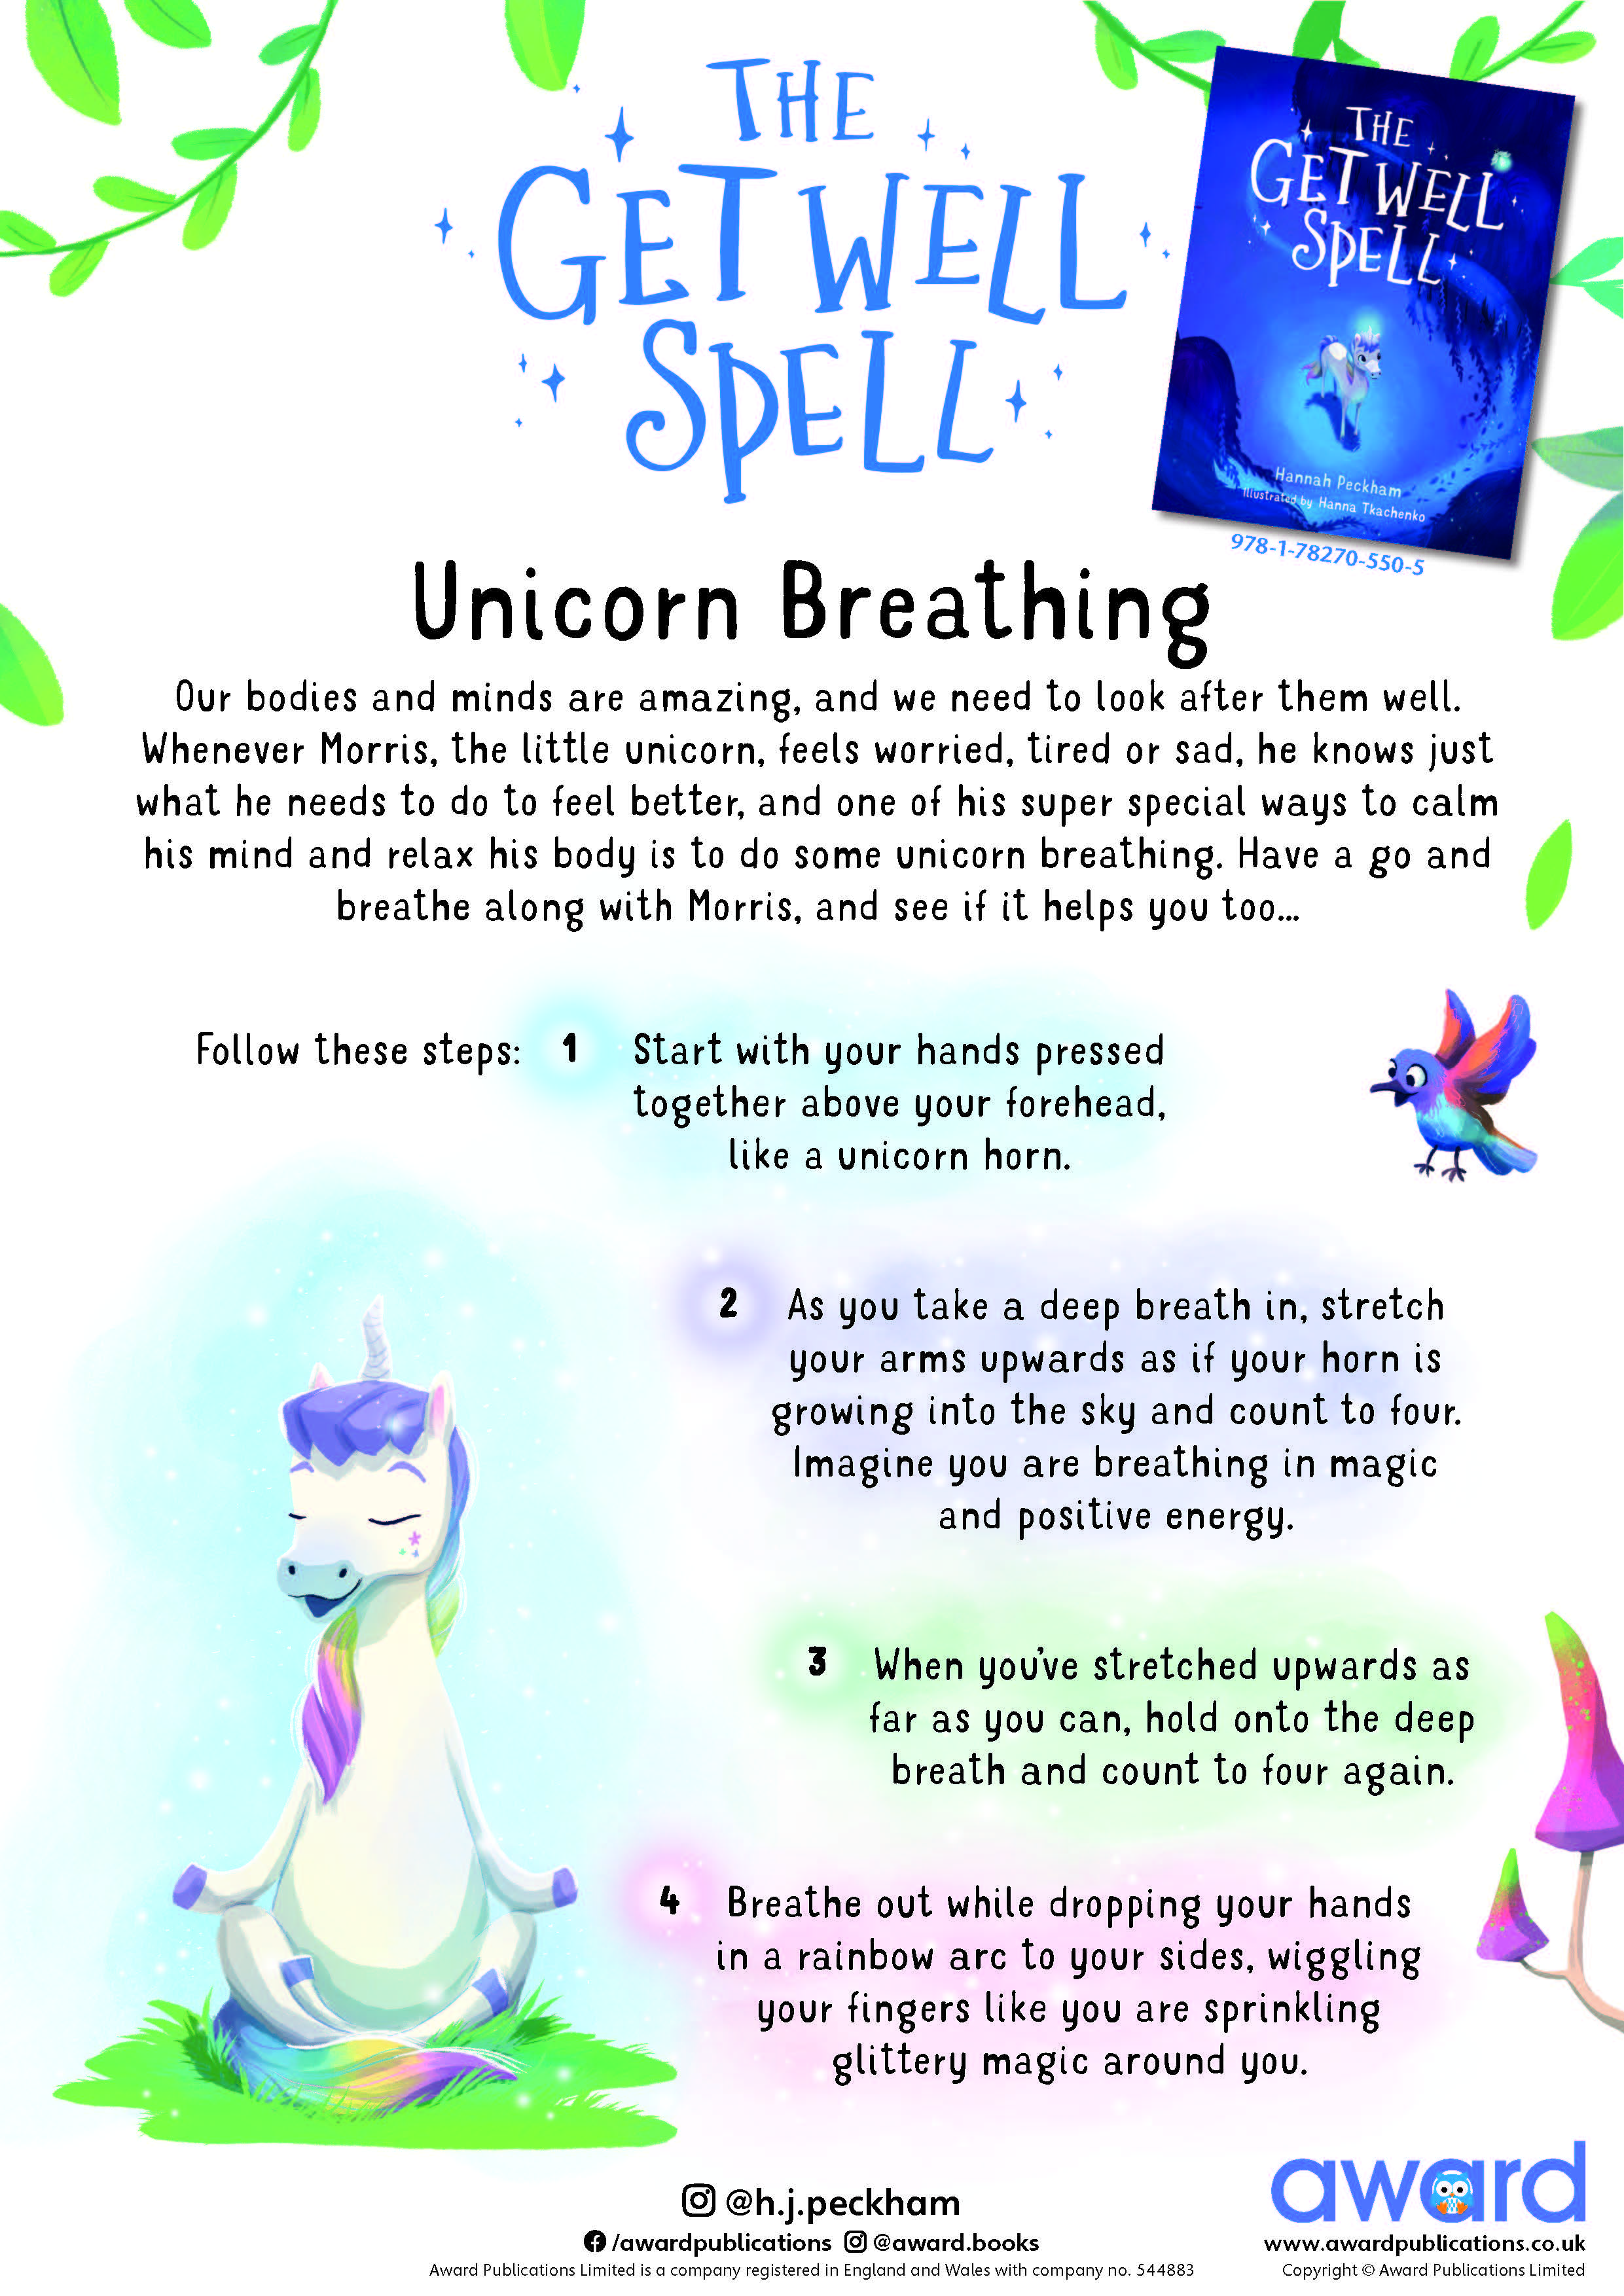 Unicorn breathing